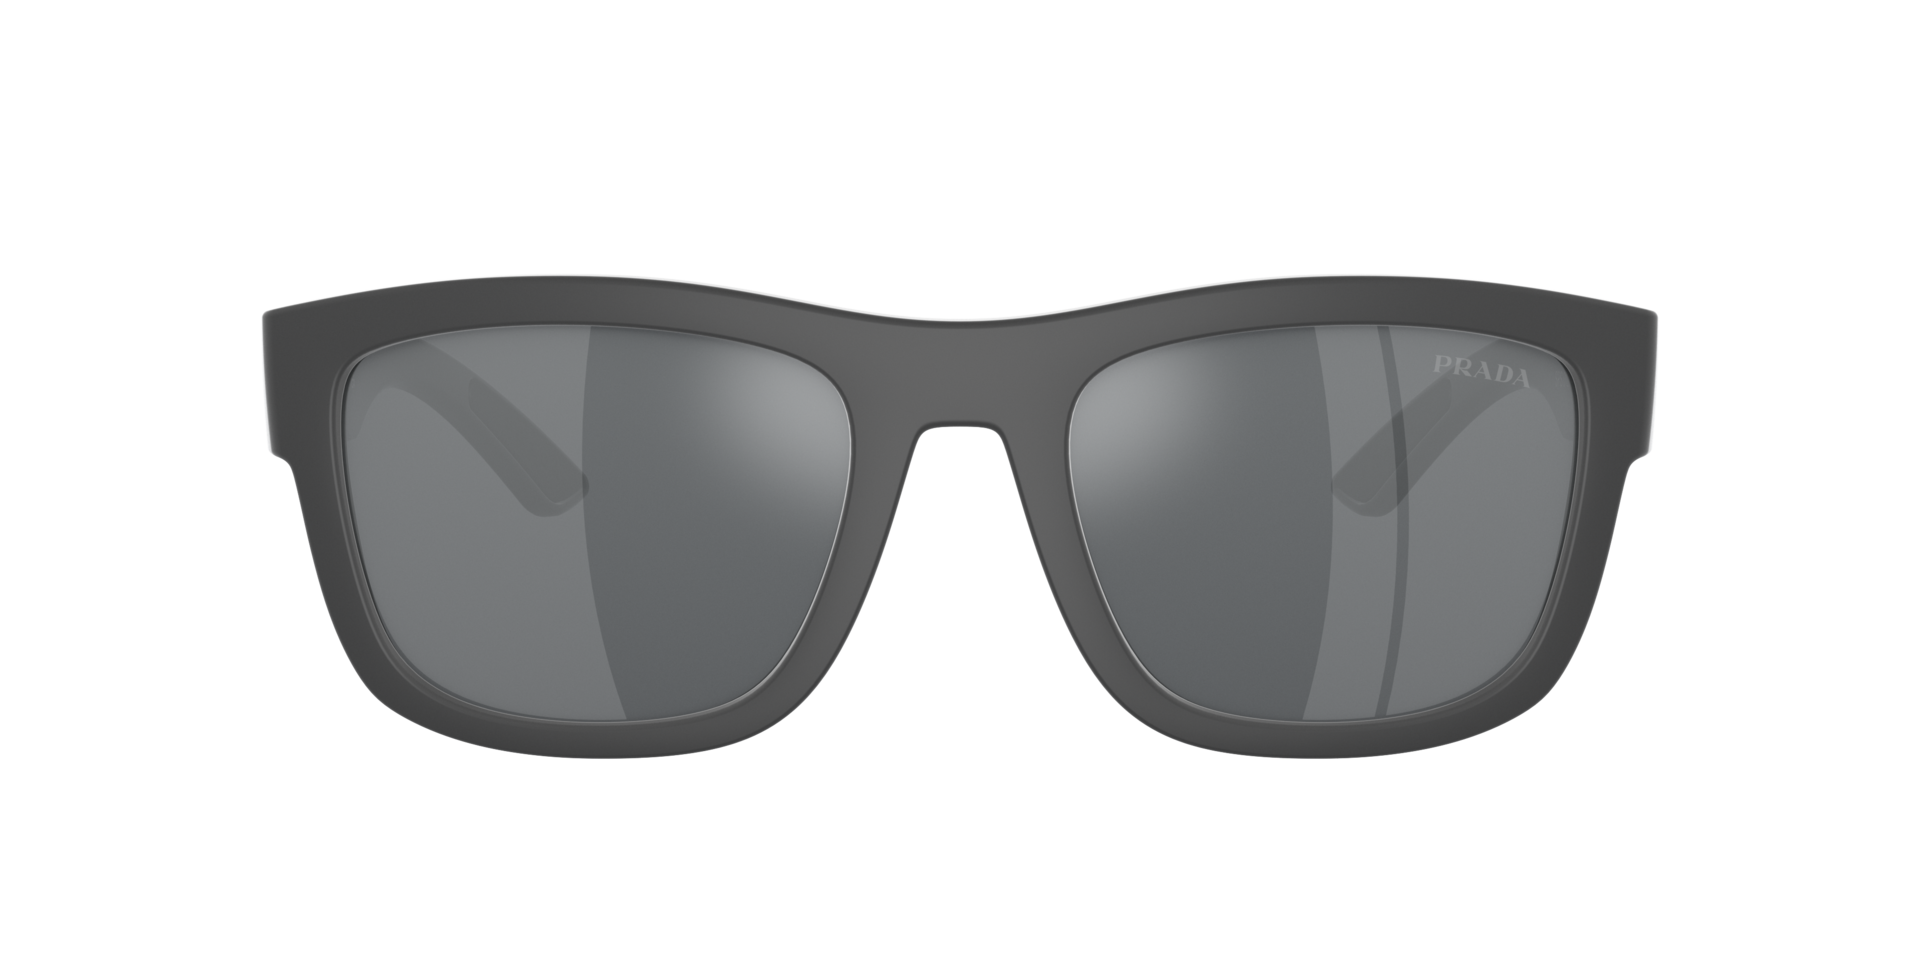 Das Bild zeigt die Sonnenbrille PS01ZS UFK5L0 von der Marke Prada Linea Rossa in schwarz.